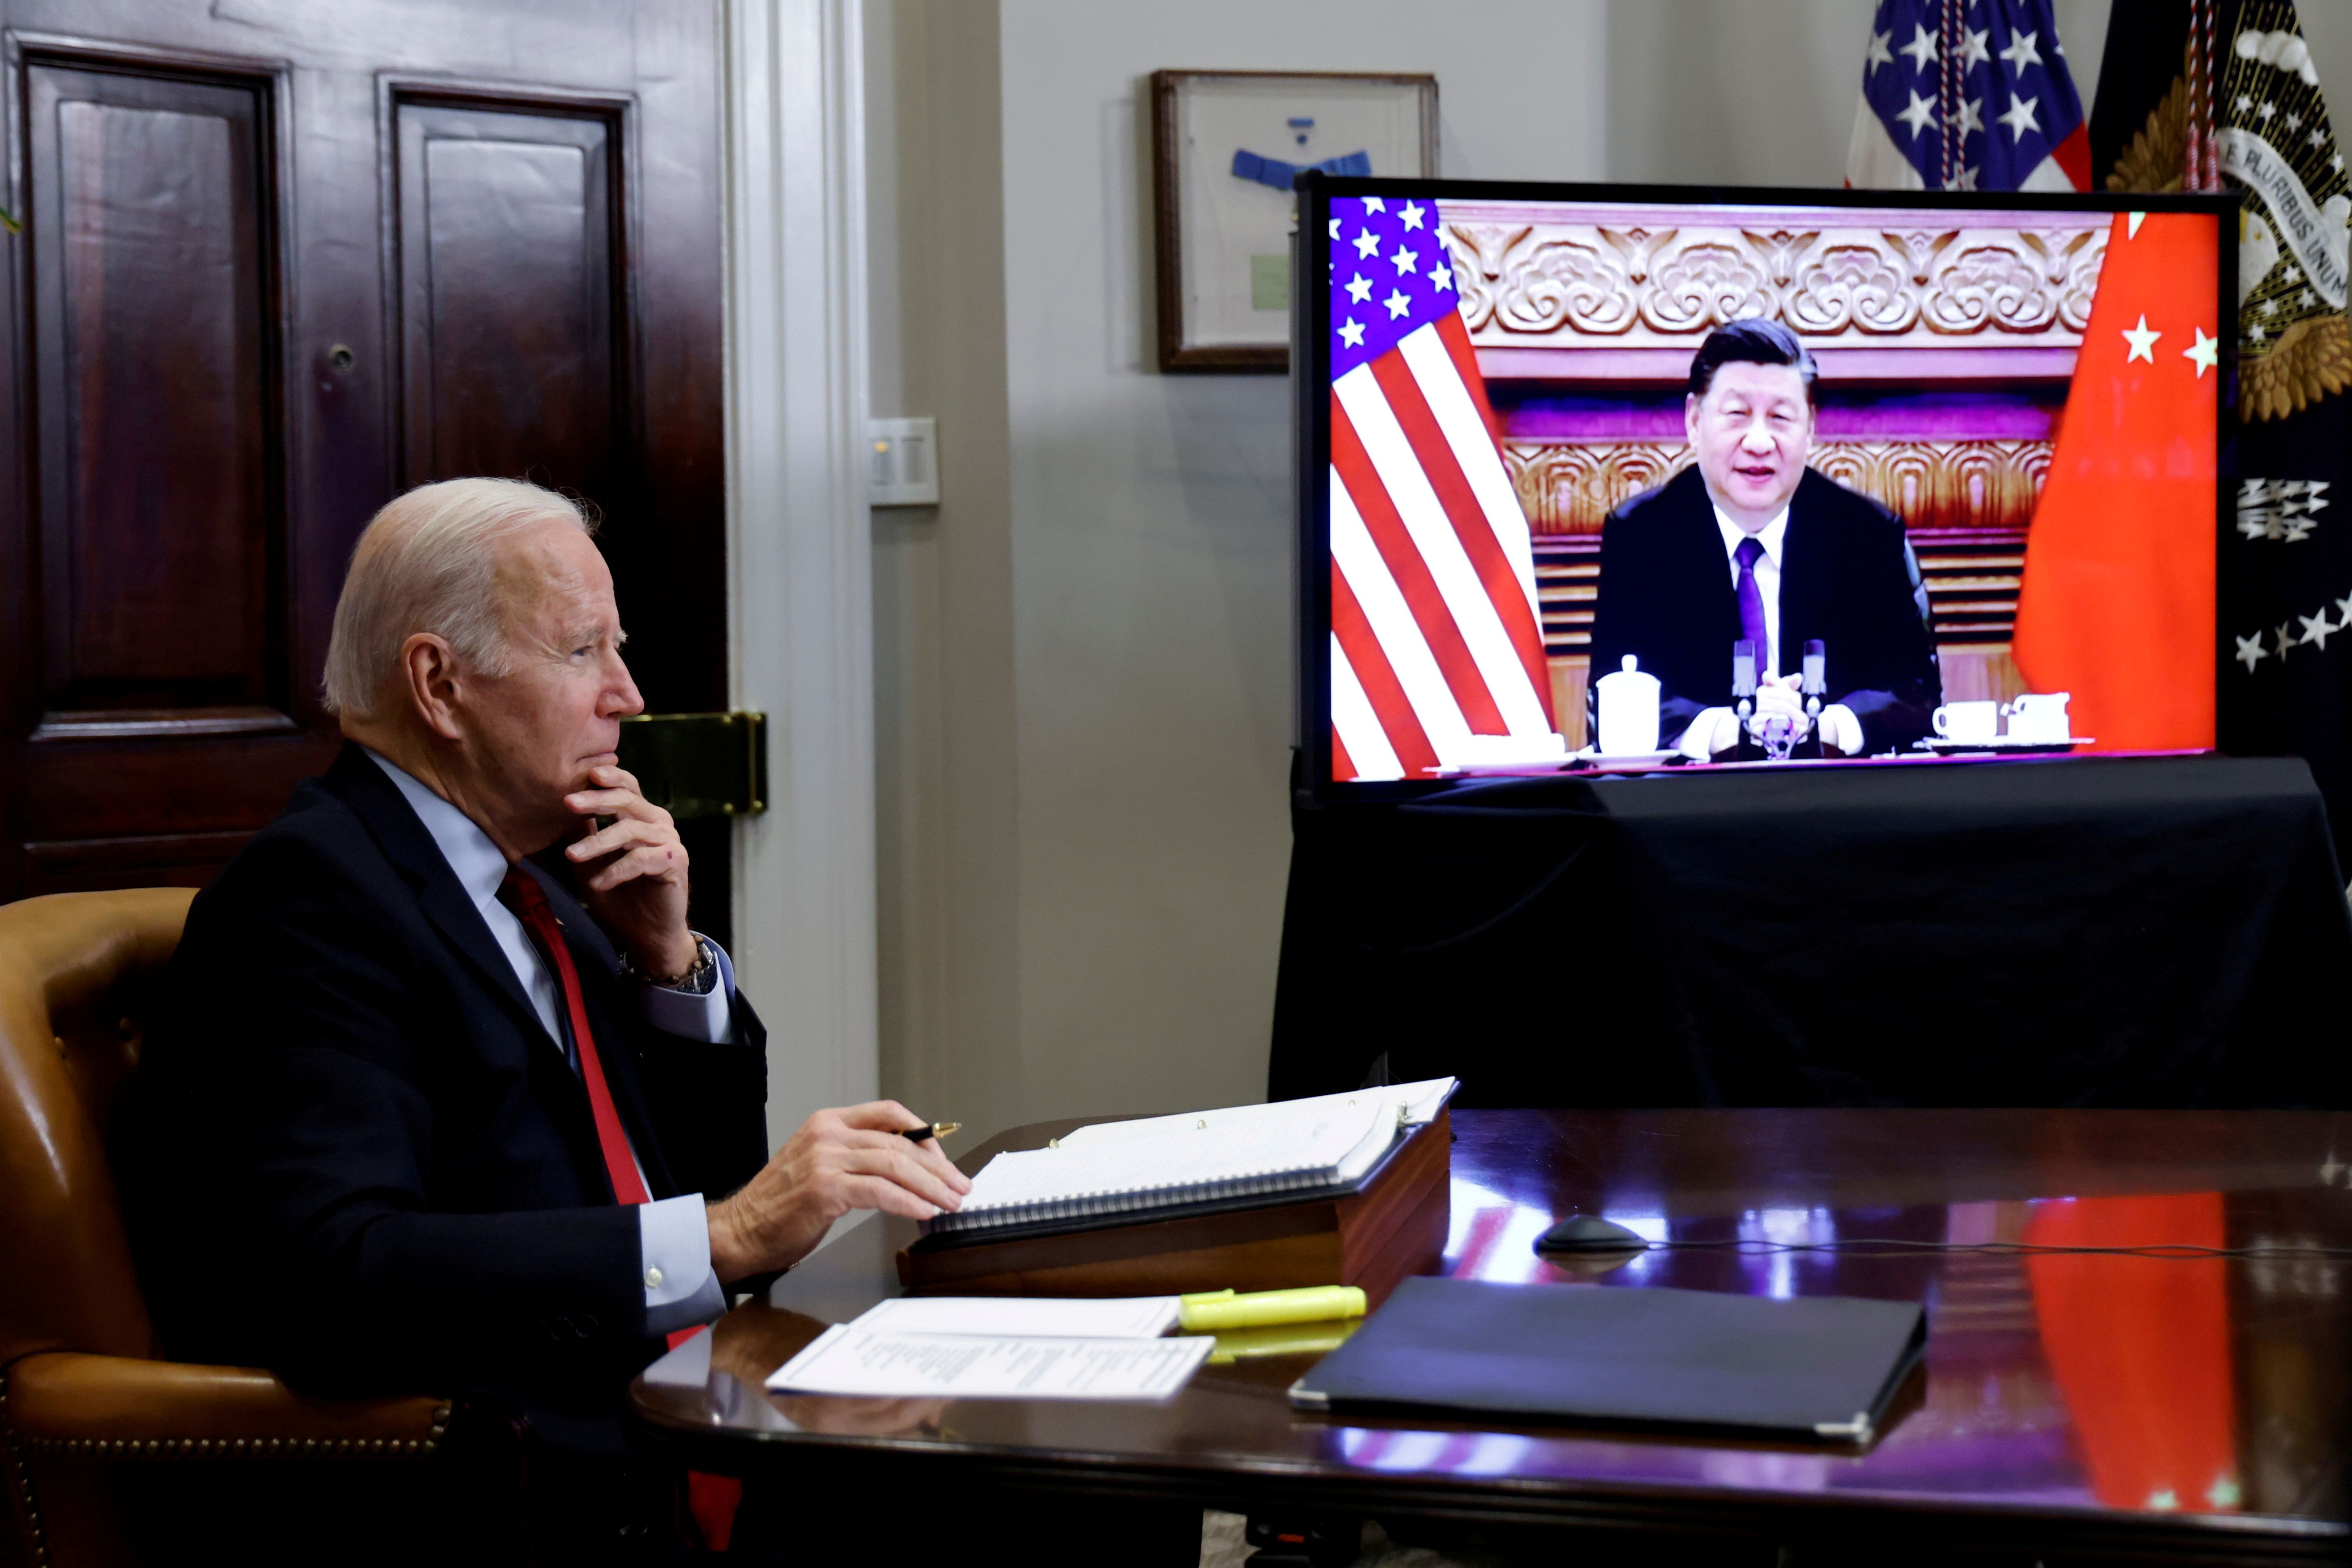 FOTO DE ARCHIVO: El presidente de Estados Unidos, Joe Biden, habla virtualmente con el líder chino Xi Jinping desde la Casa Blanca en Washington, Estados Unidos, el 15 de noviembre de 2021. REUTERS/Jonathan Ernst